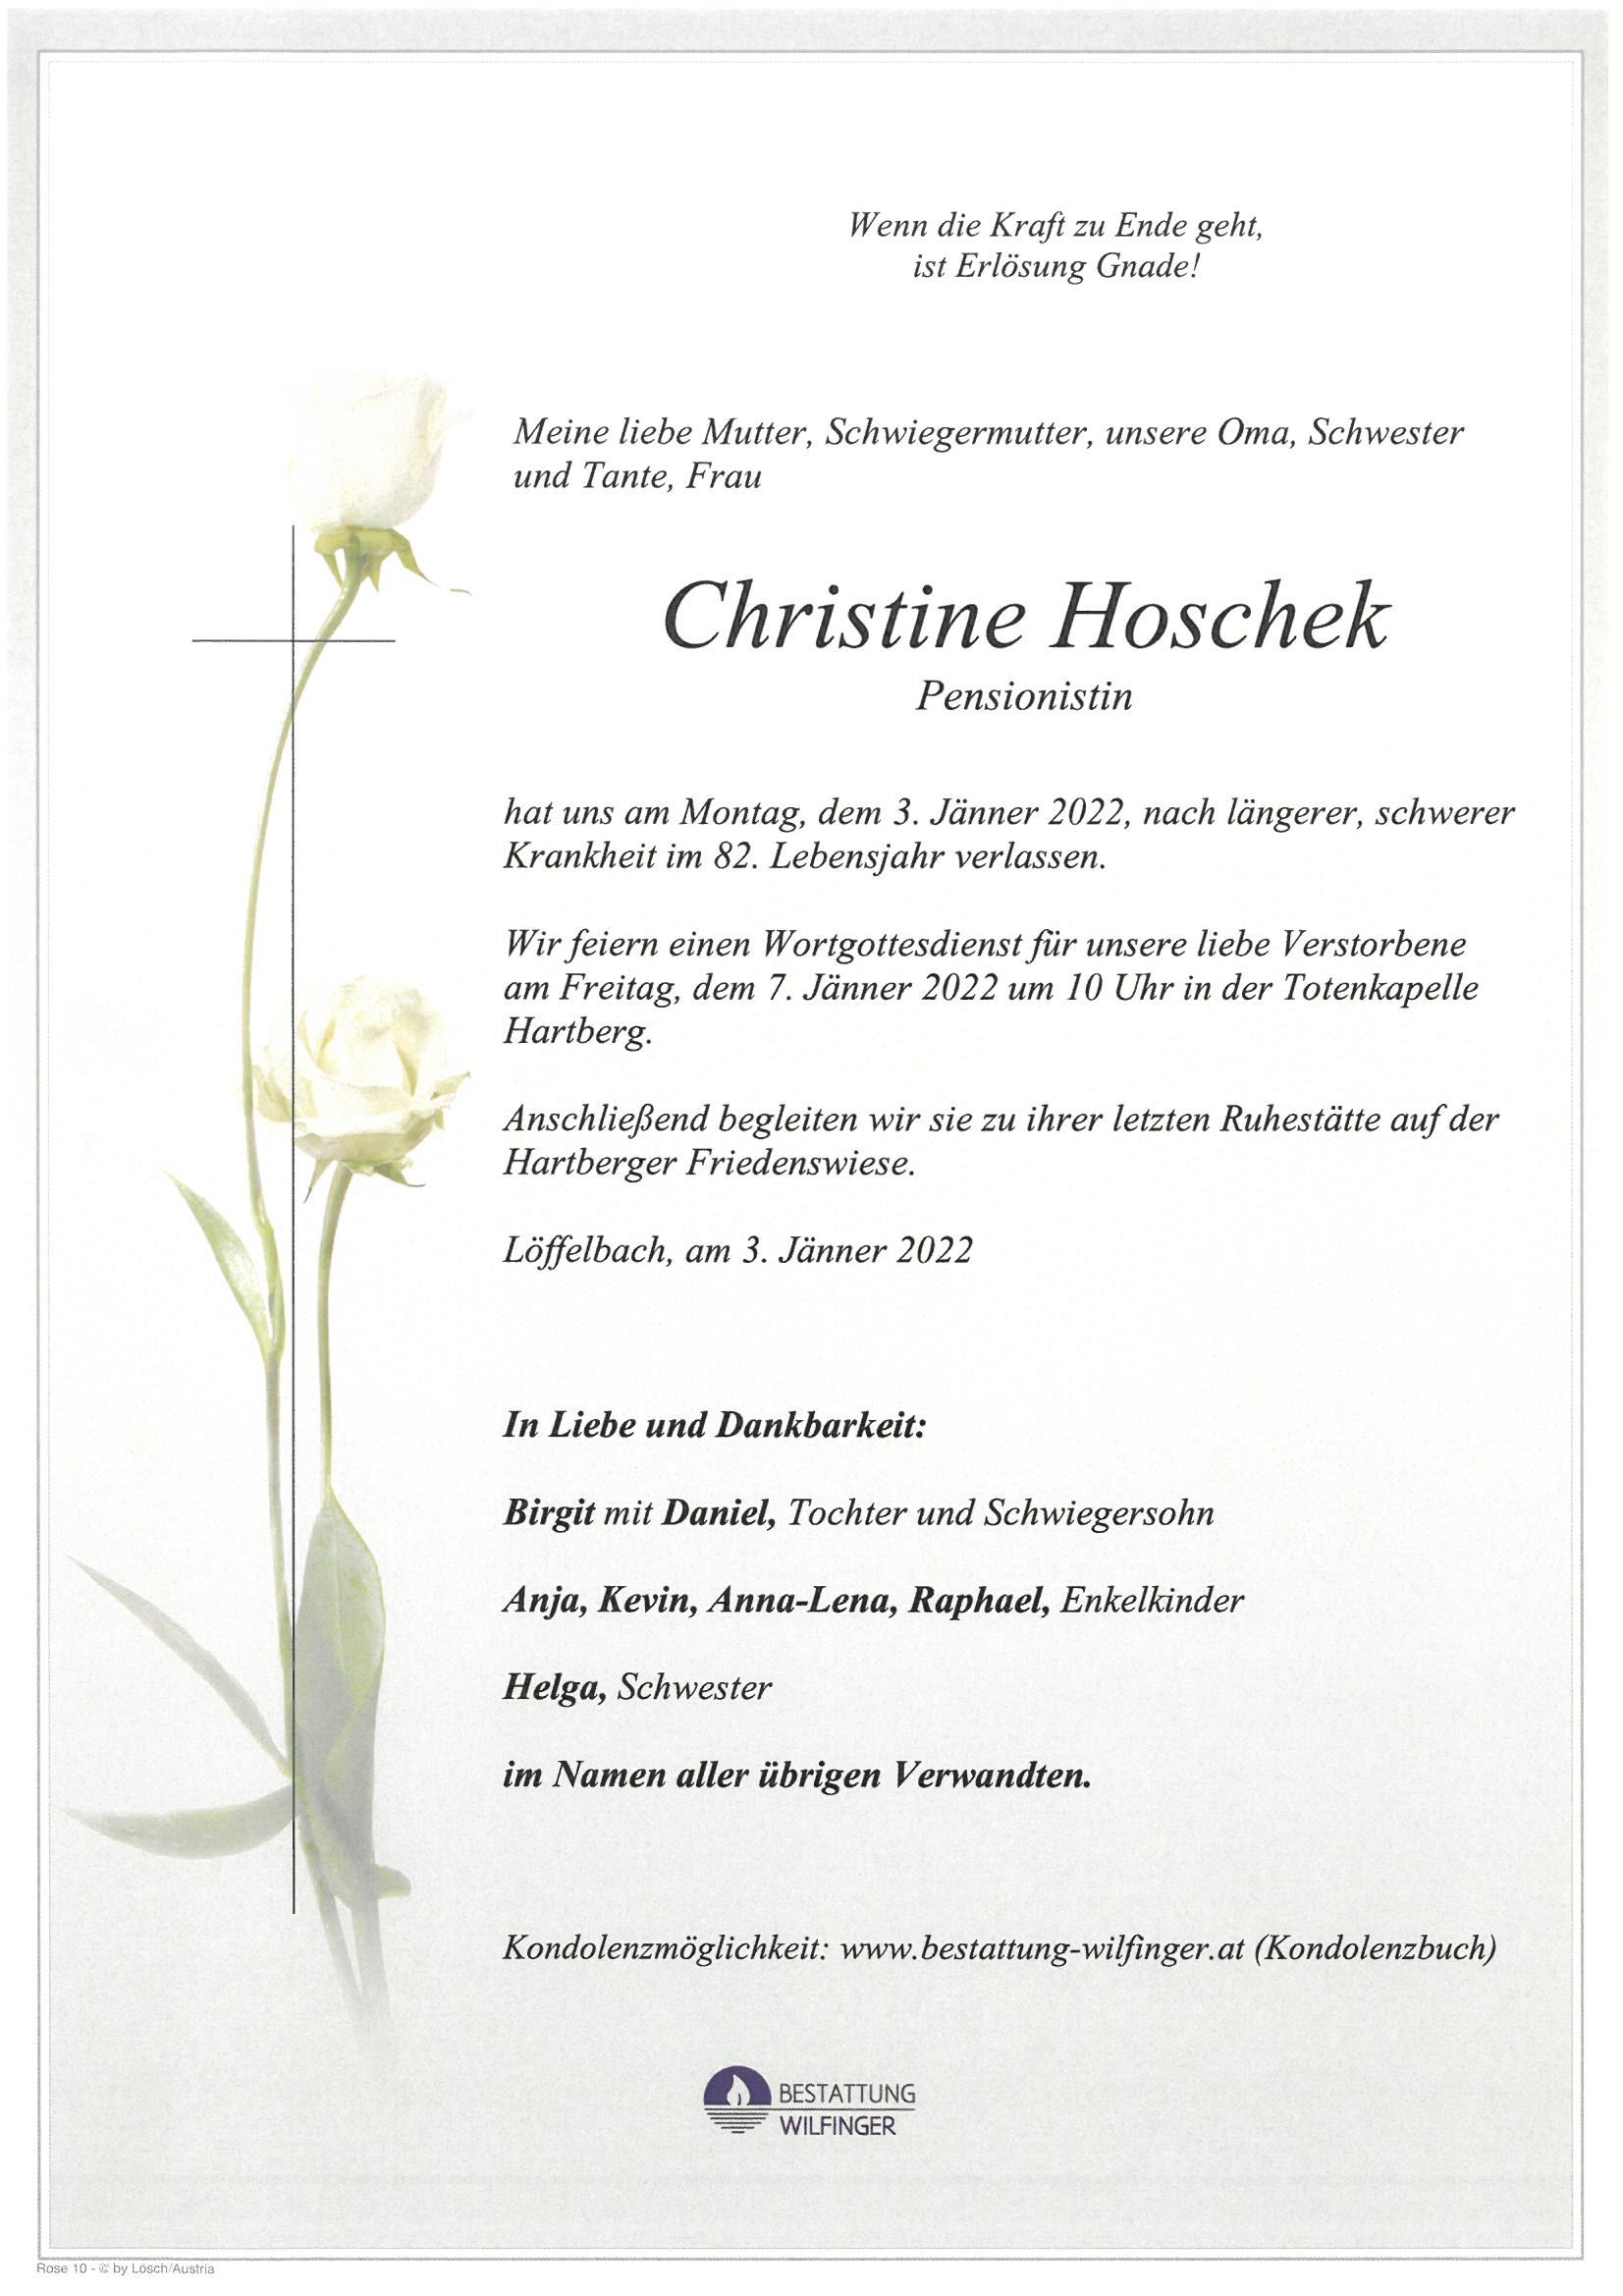 Christine Hoschek